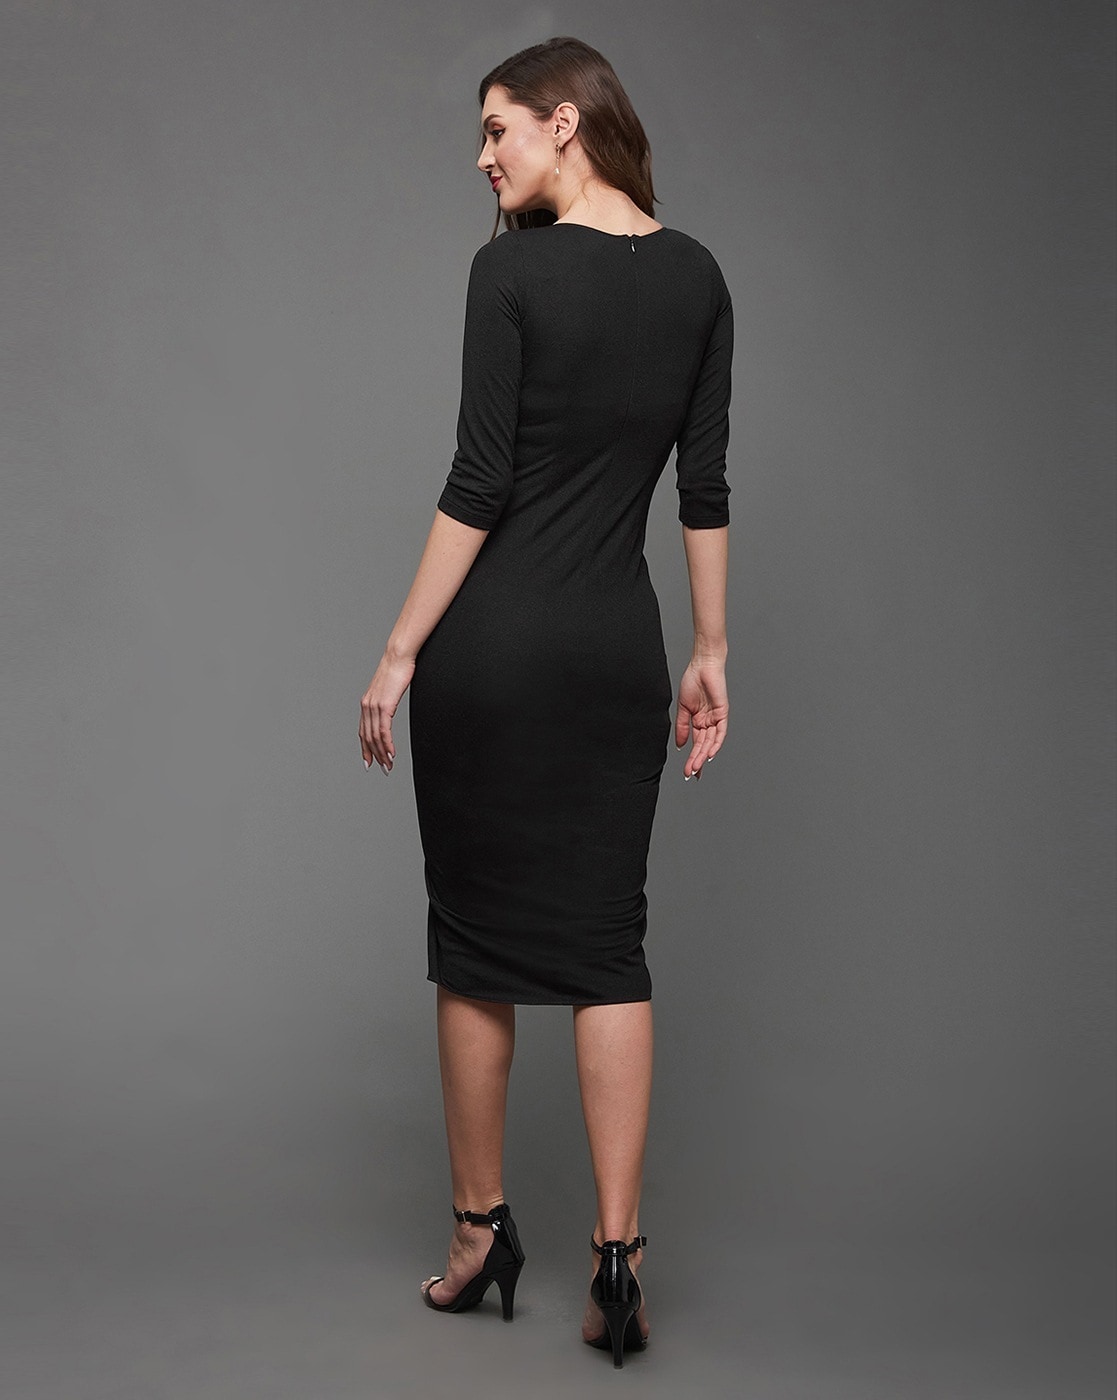 Black Formal Dresses - Buy Black Formal Dresses online in India